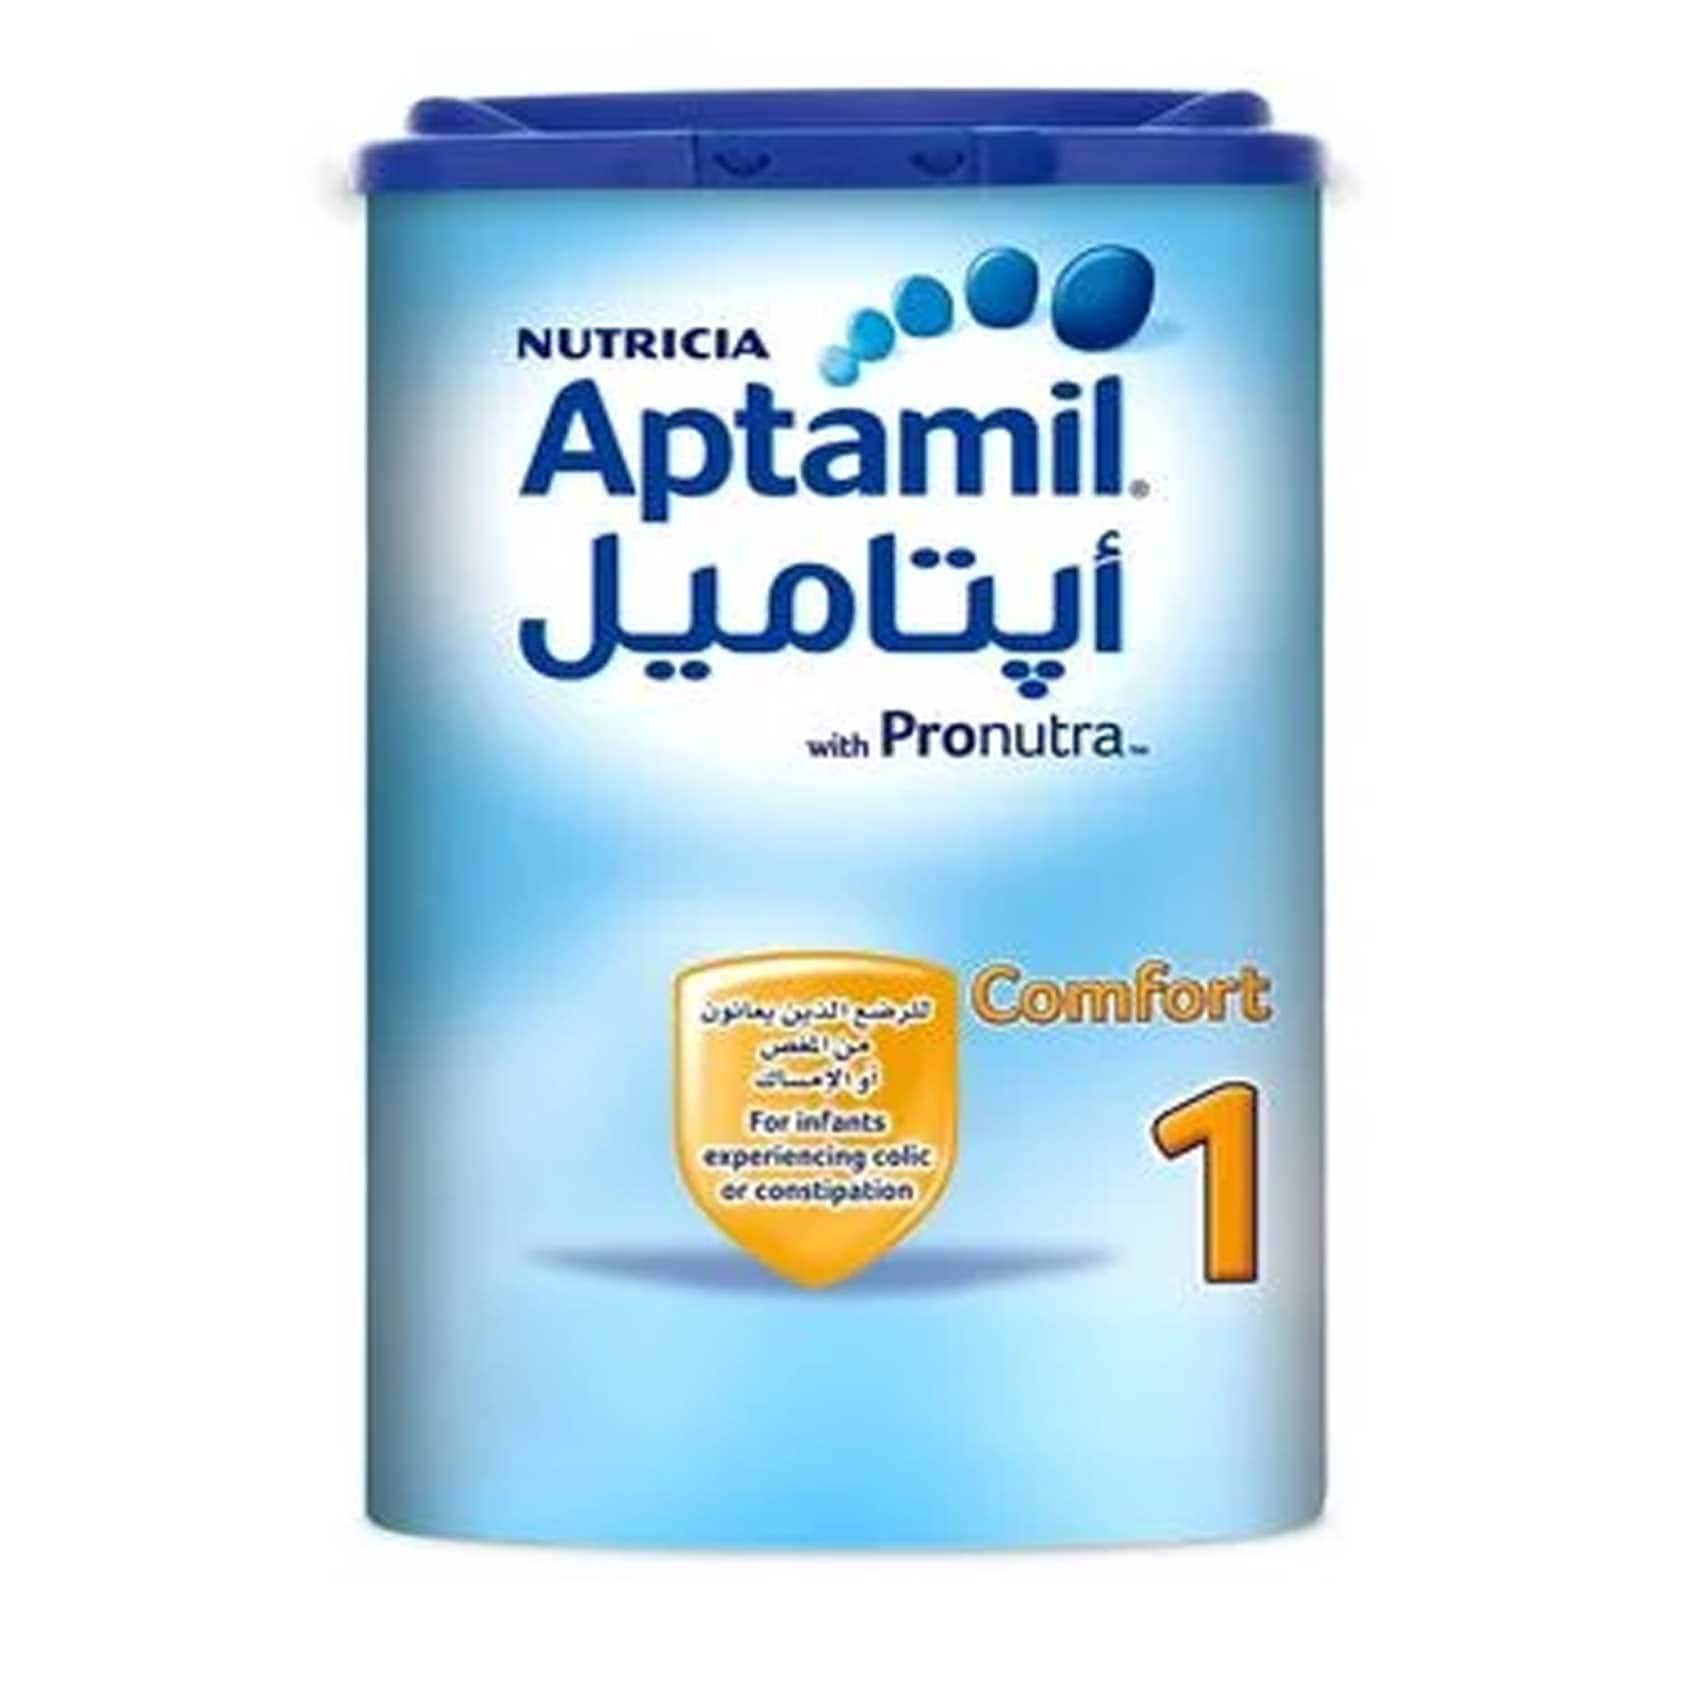 aptamil 1 powder